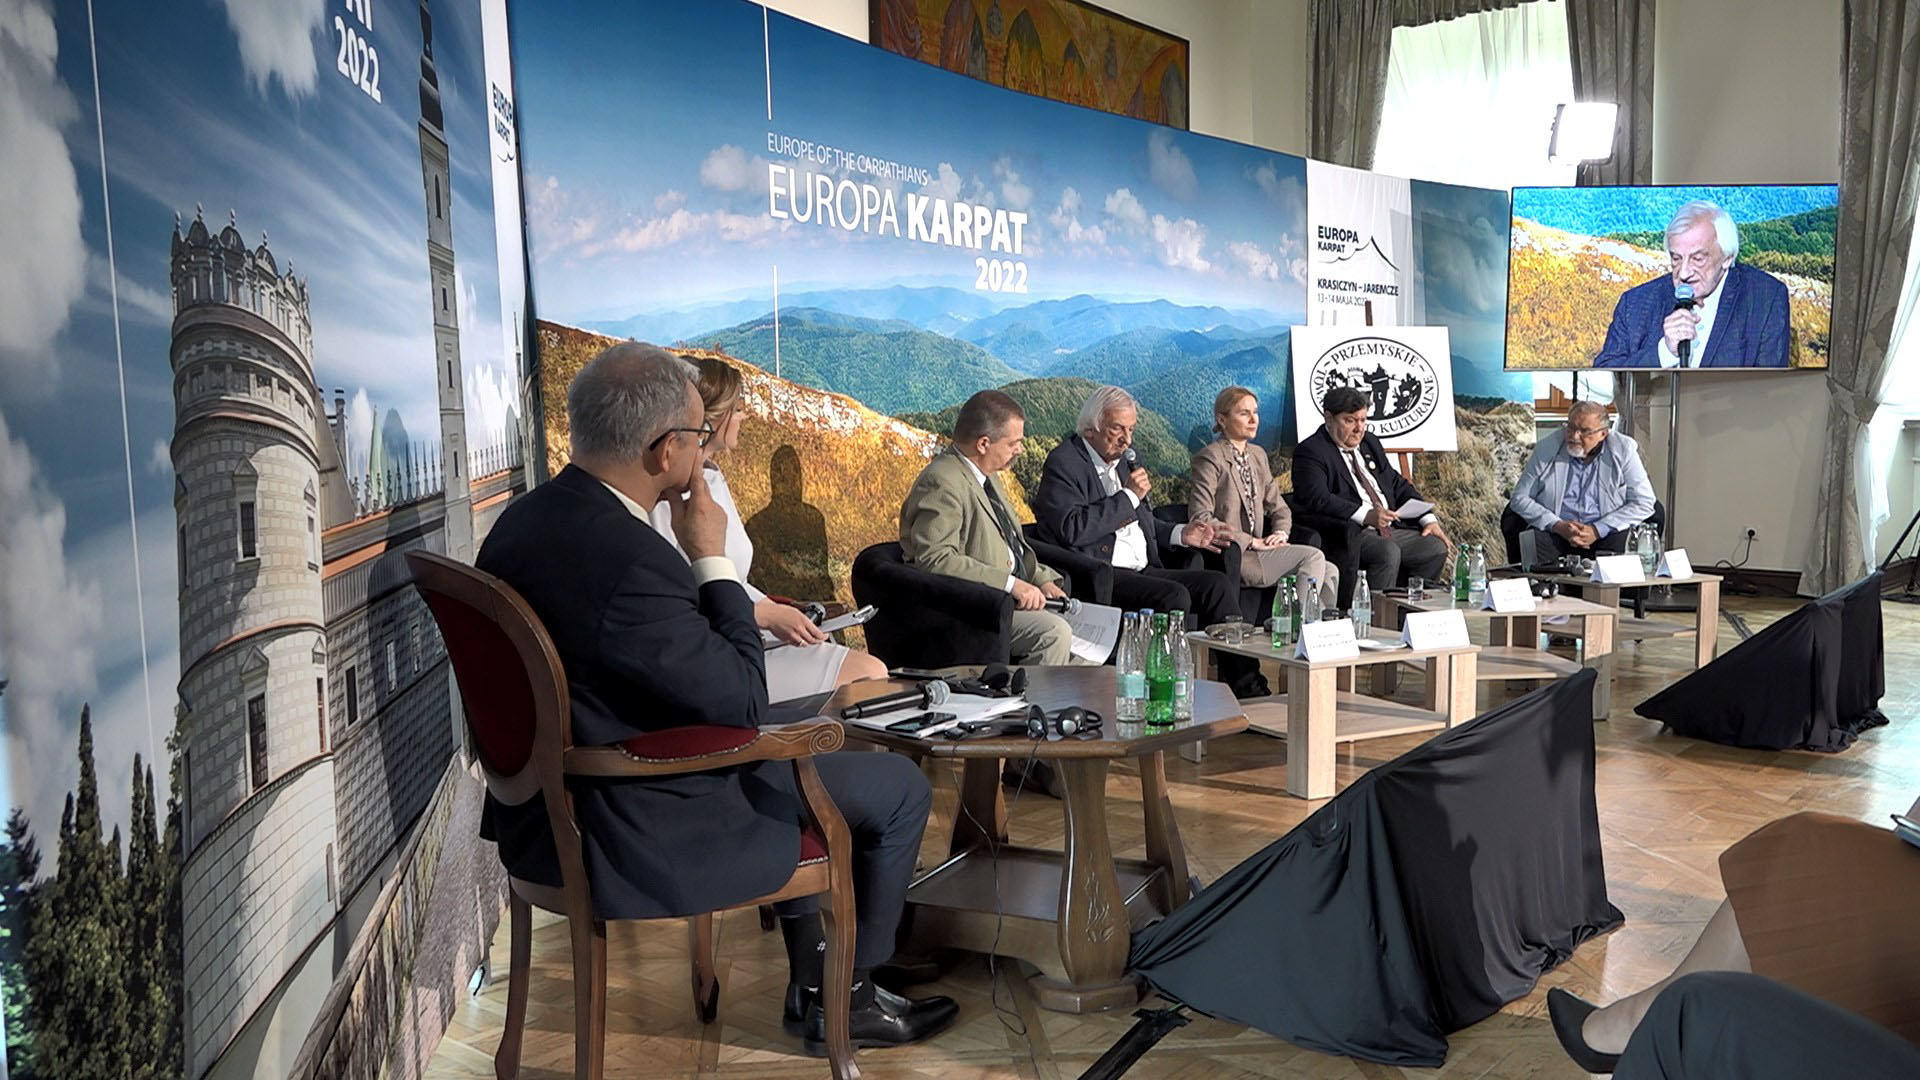 O wojnie na Ukrainie podczas konferencji Europa Karpat w Krasiczynie